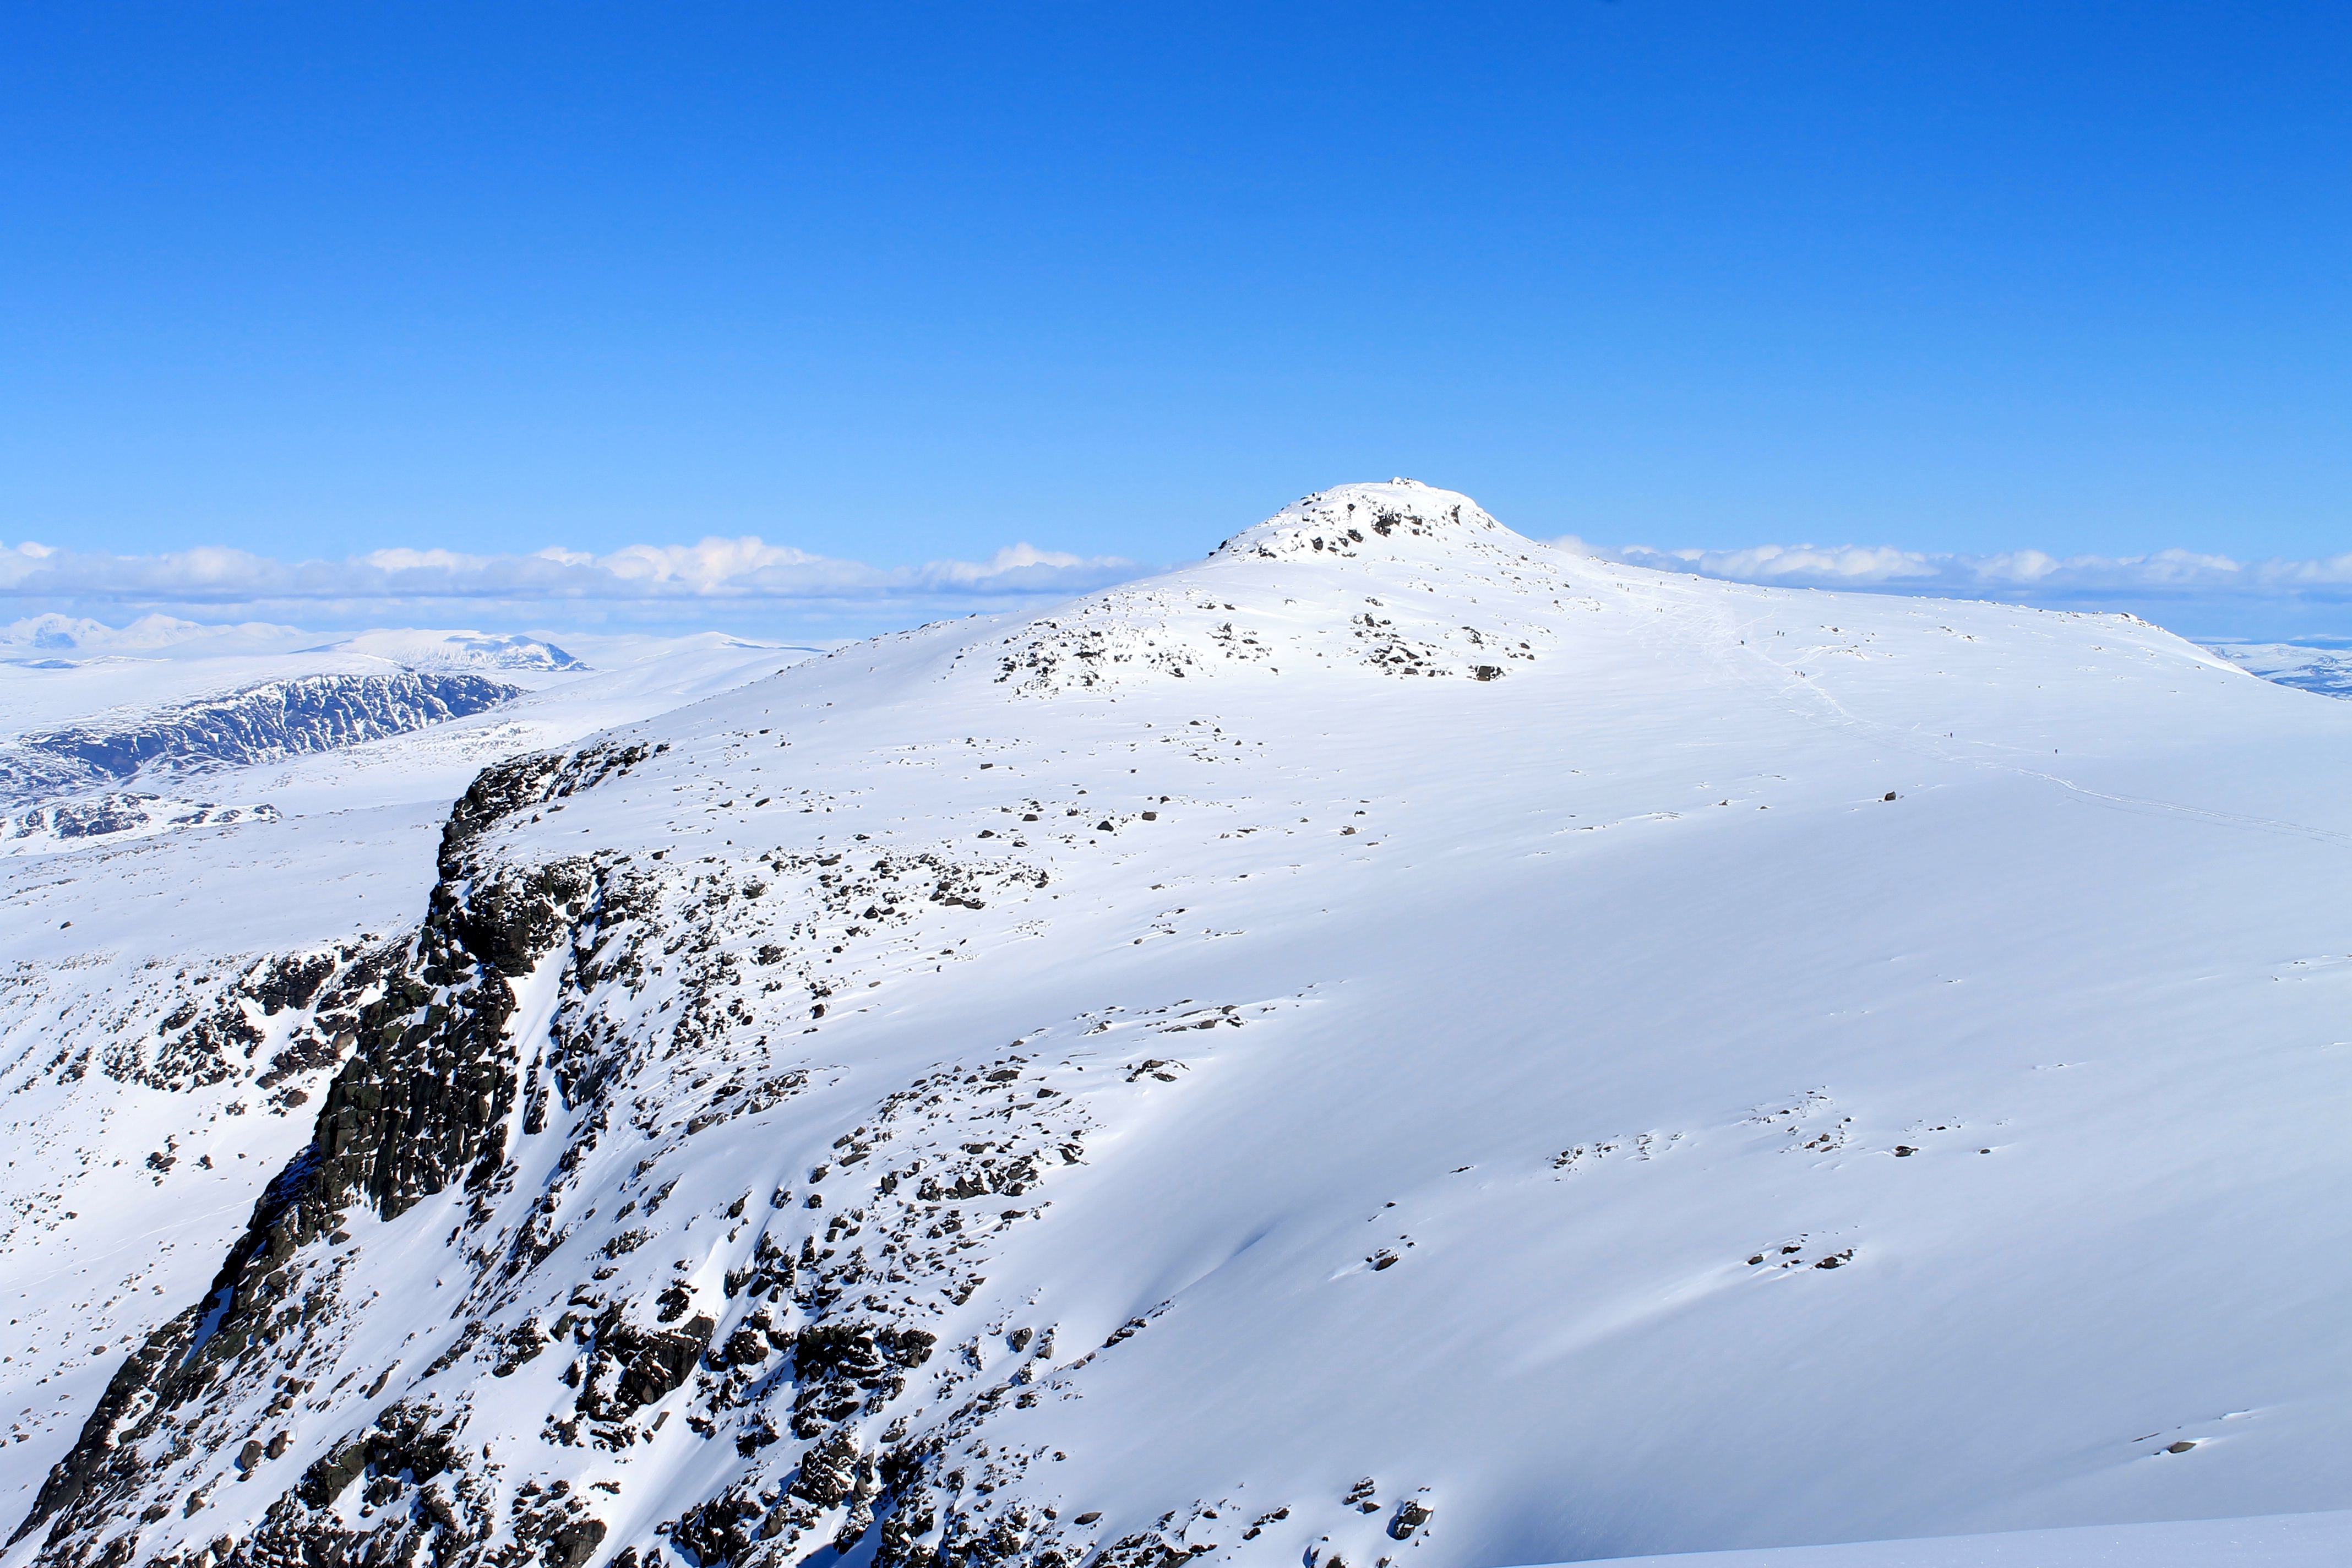 Rasletinden (2.010 moh) er toppturen flest går i Jotuneheimen. En kort og enkel tur fra Valdresflye.